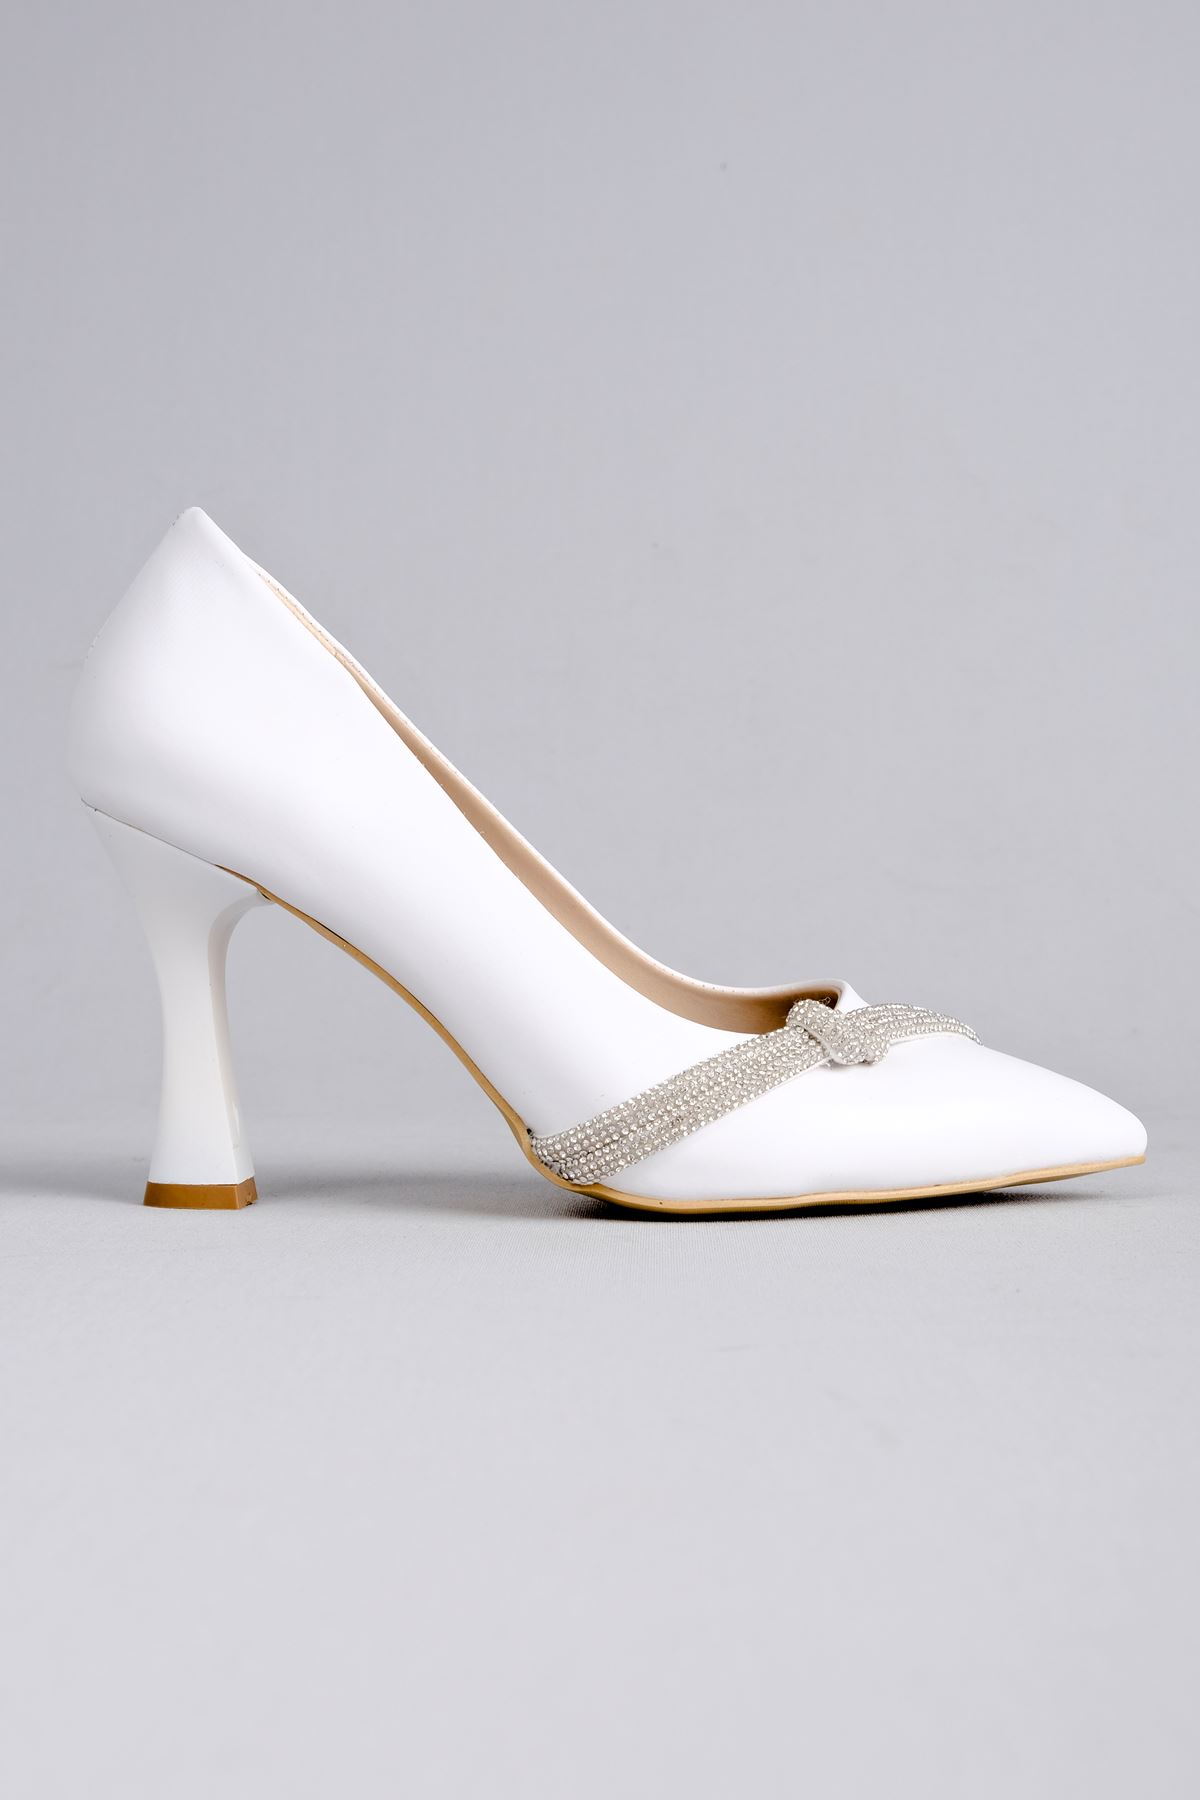 Lavender Kadın Topuklu Ayakkabı Düğüm Taşlı-beyaz